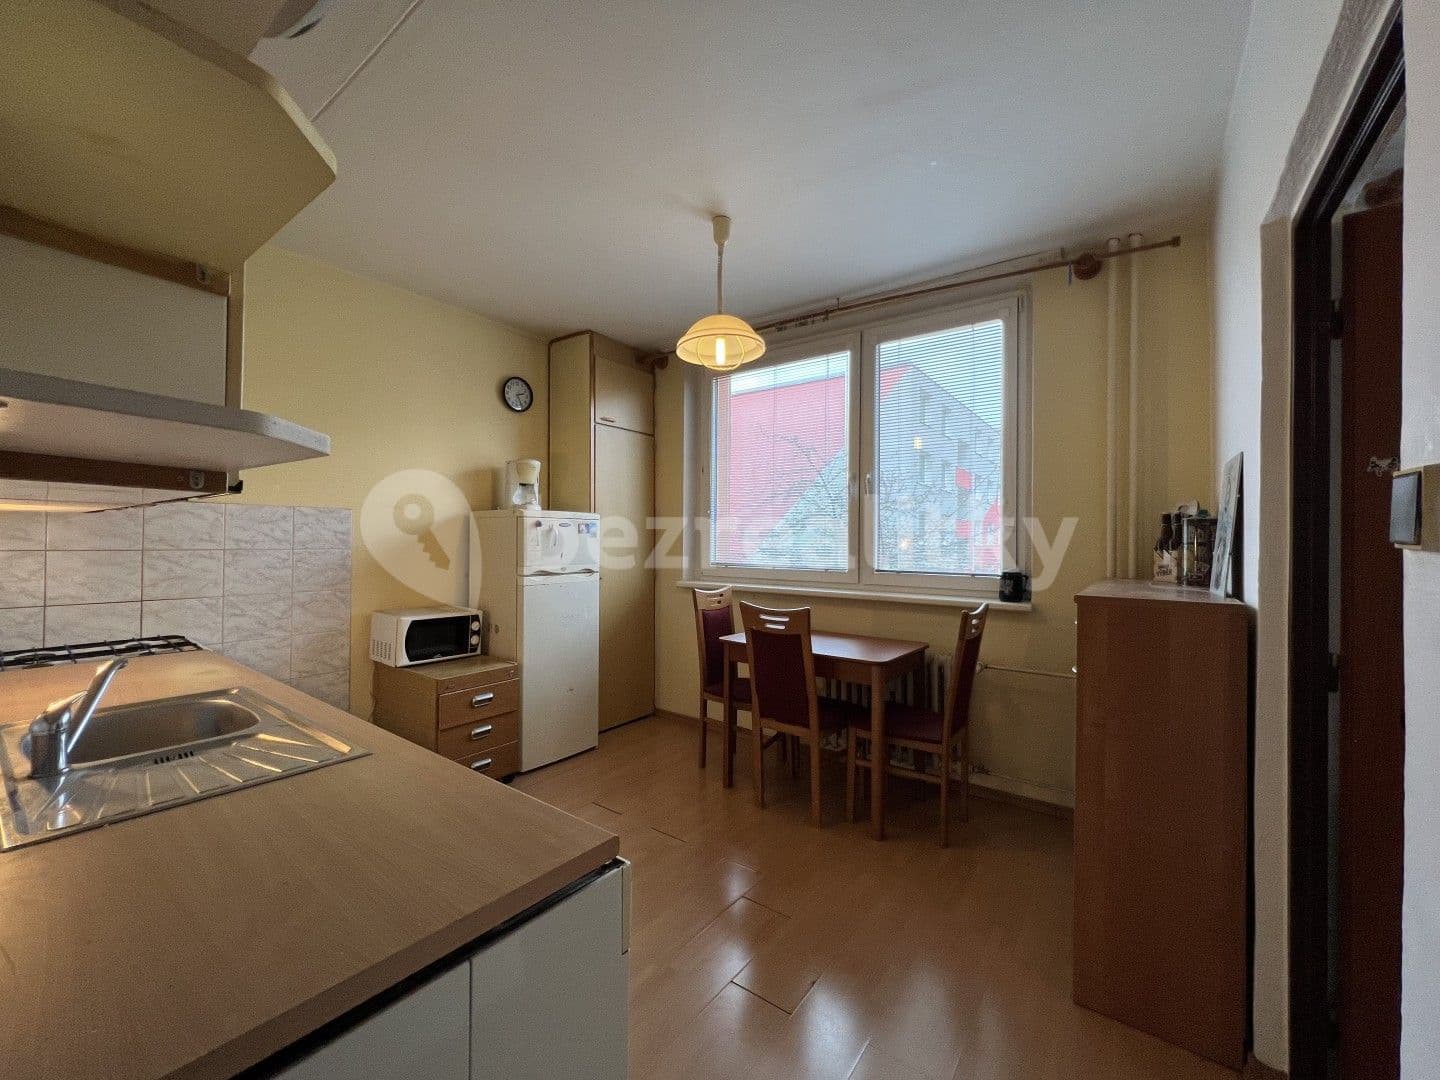 2 bedroom flat for sale, 58 m², Rumunská, Kroměříž, Zlínský Region